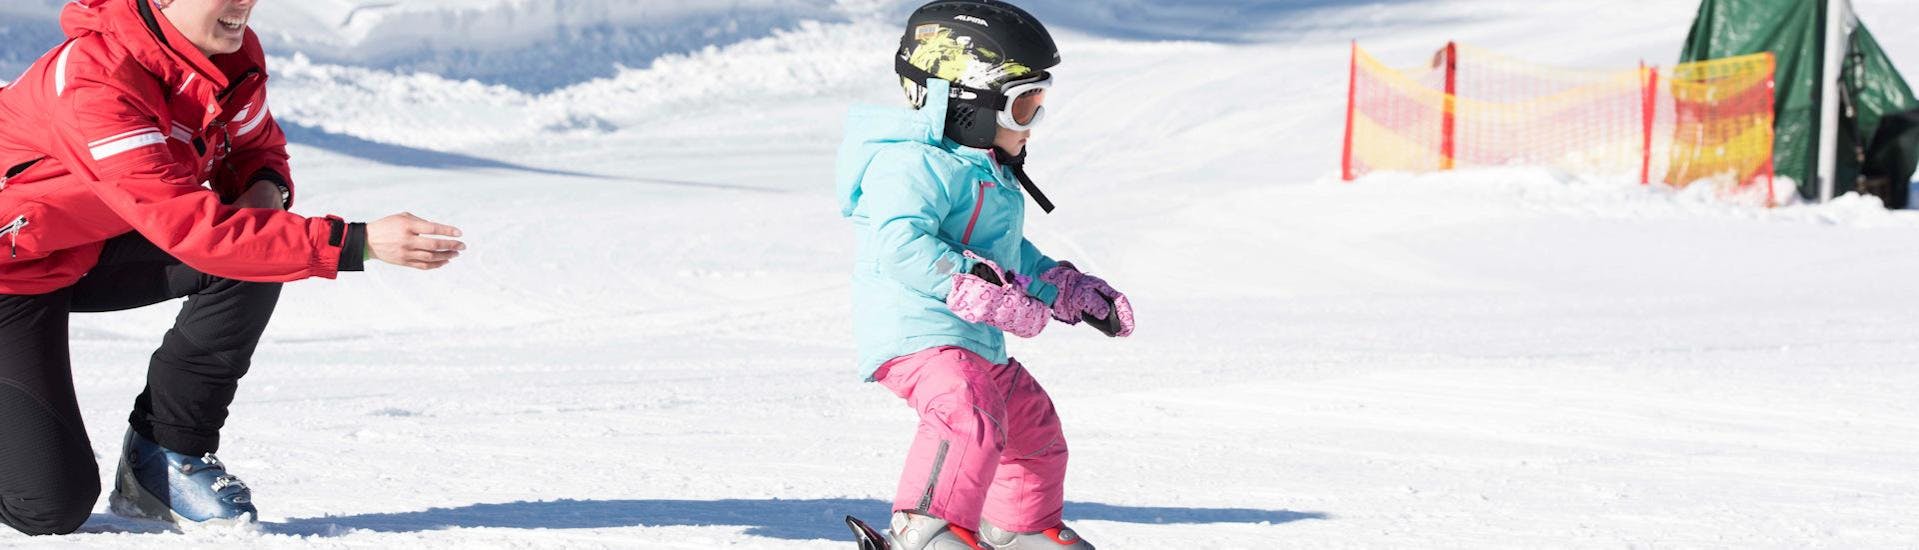 Lezioni di sci per bambini per avanzati.